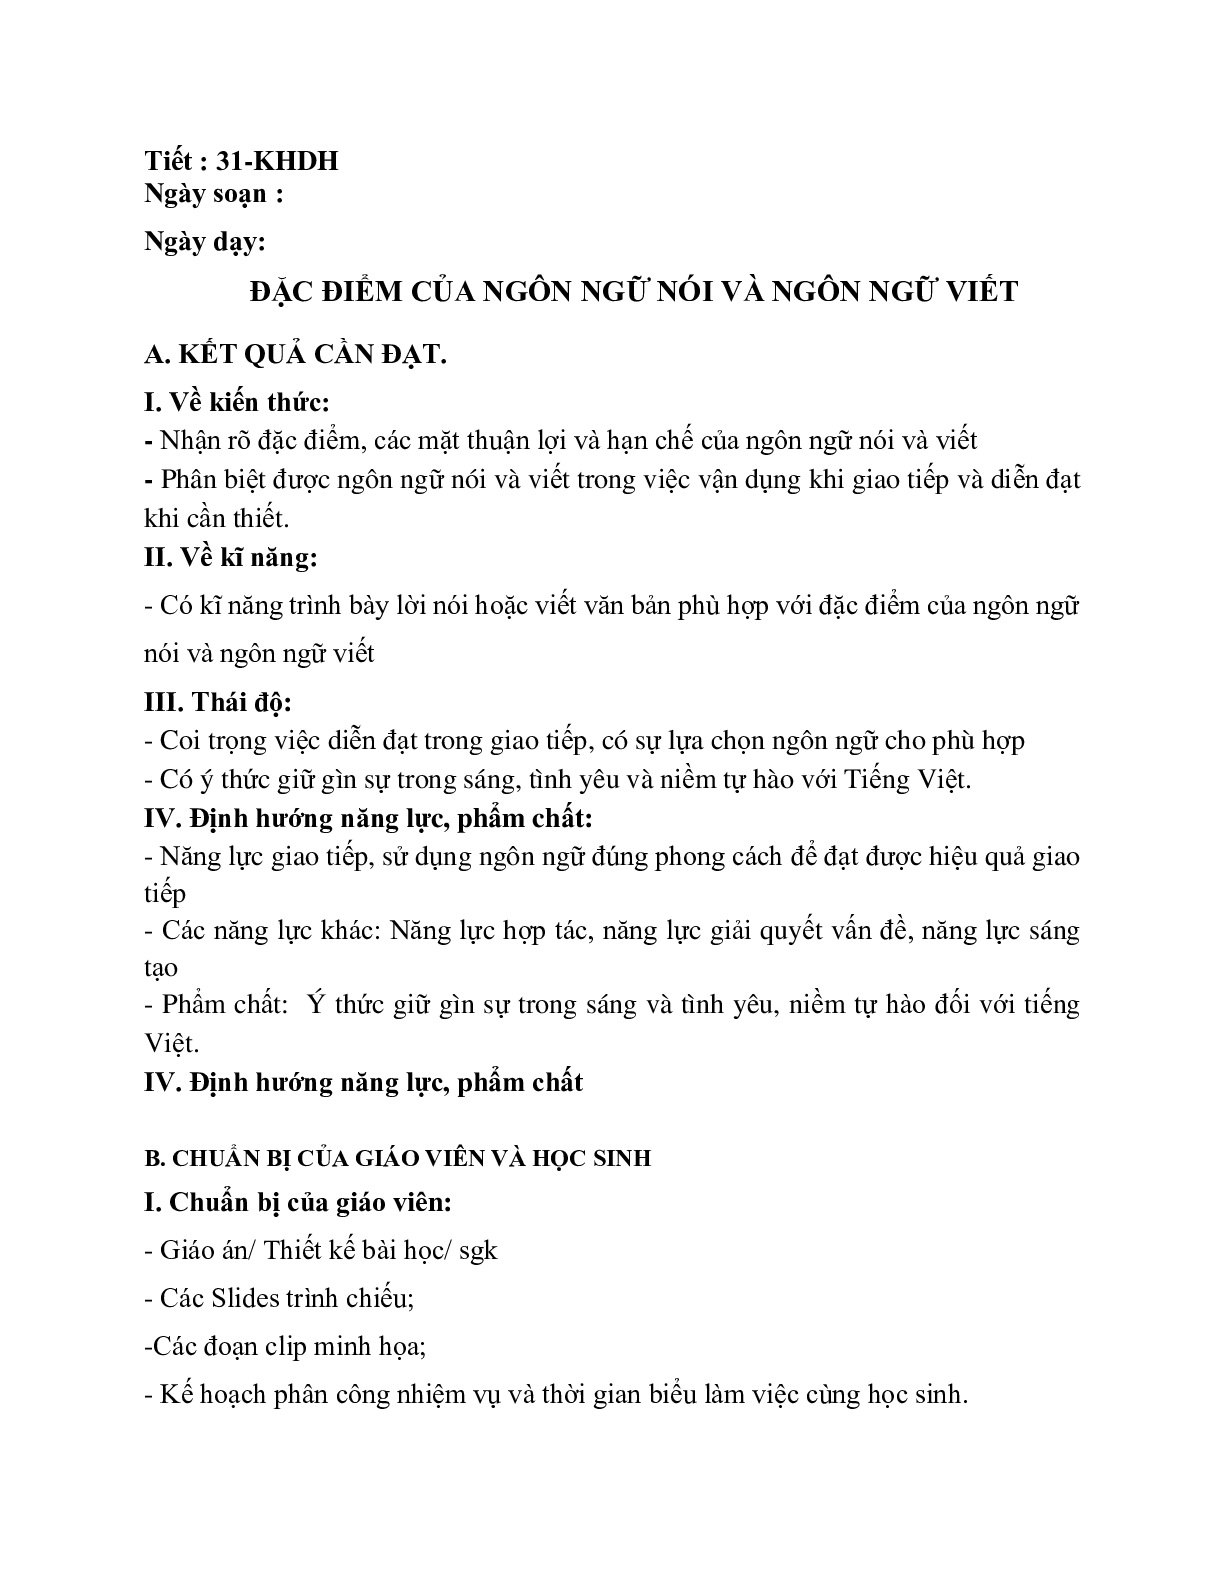 Giáo án ngữ văn lớp 10 Tiết 31: Đặc điểm của ngôn ngữ nói và ngôn ngữ viết (trang 1)